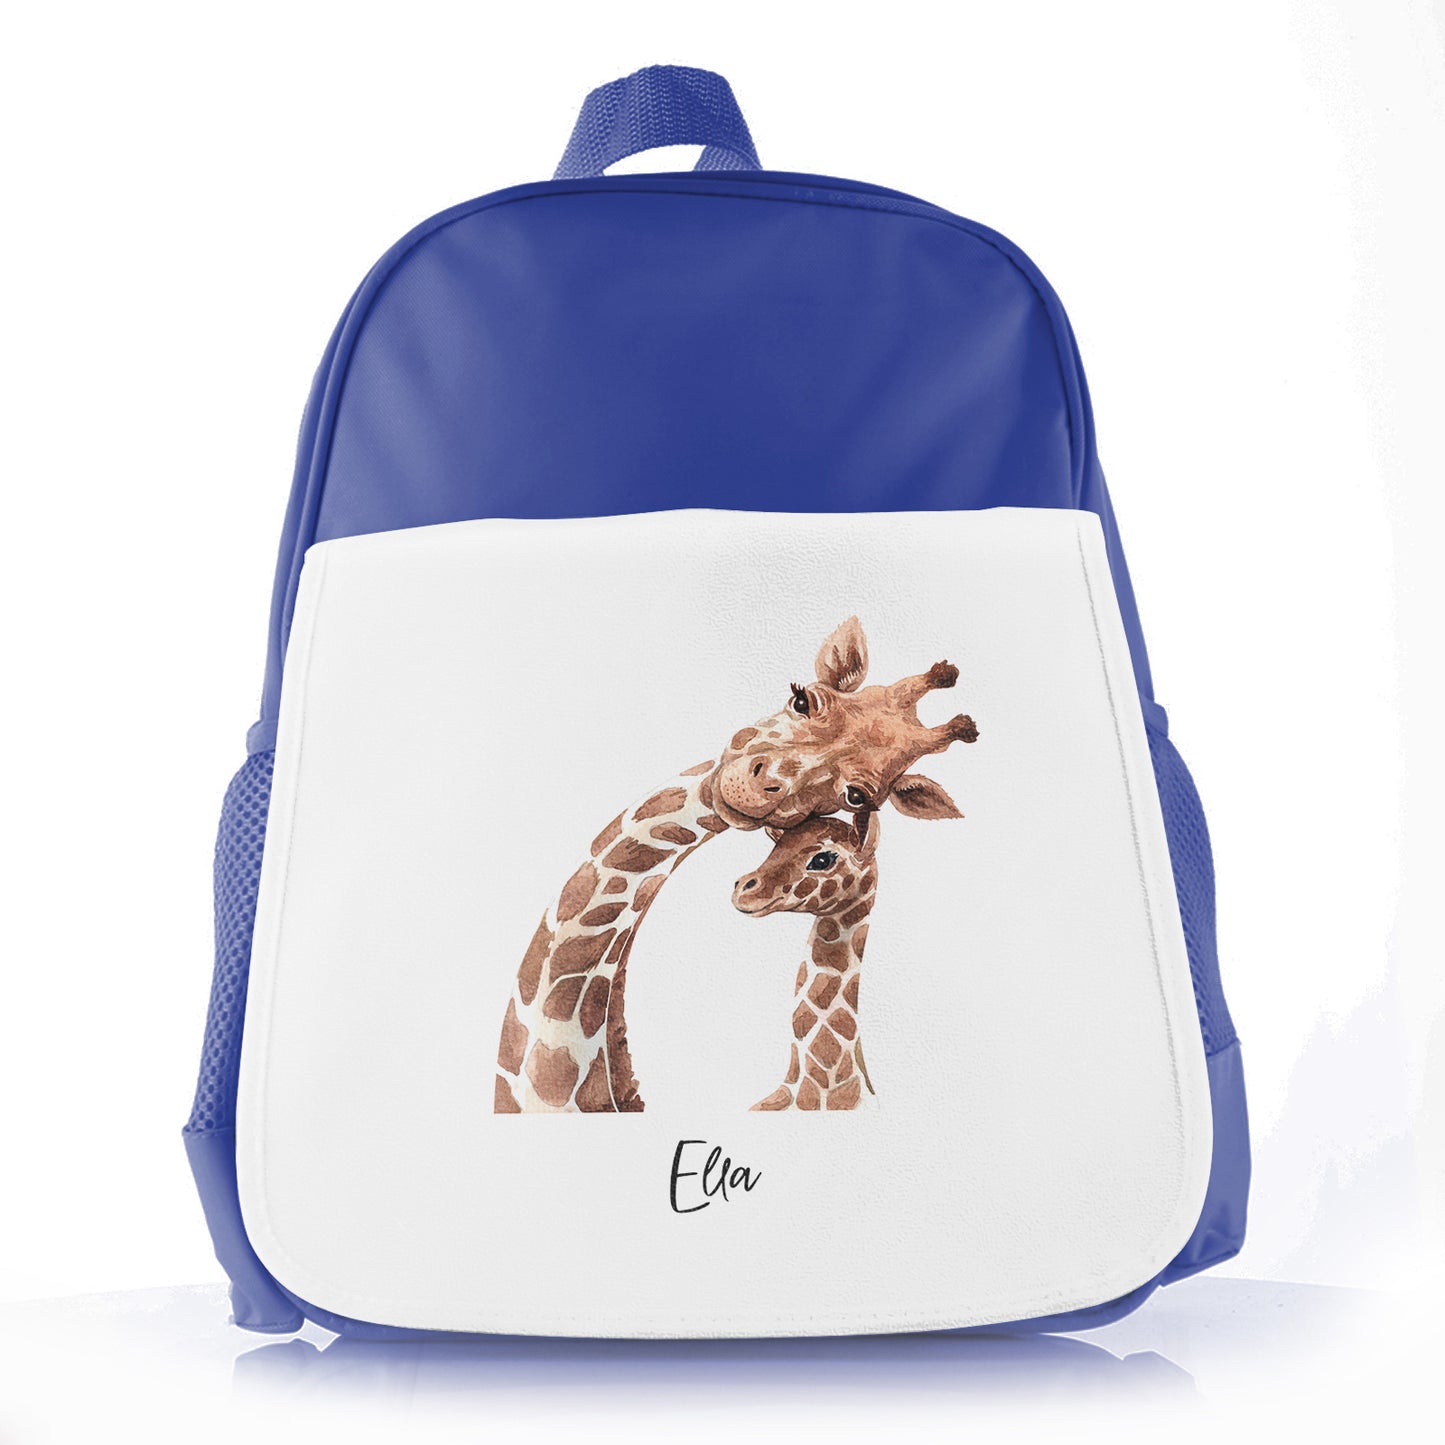 Personalisierte Schultüte mit Begrüßungstext und entspannenden Mama- und Baby-Giraffen